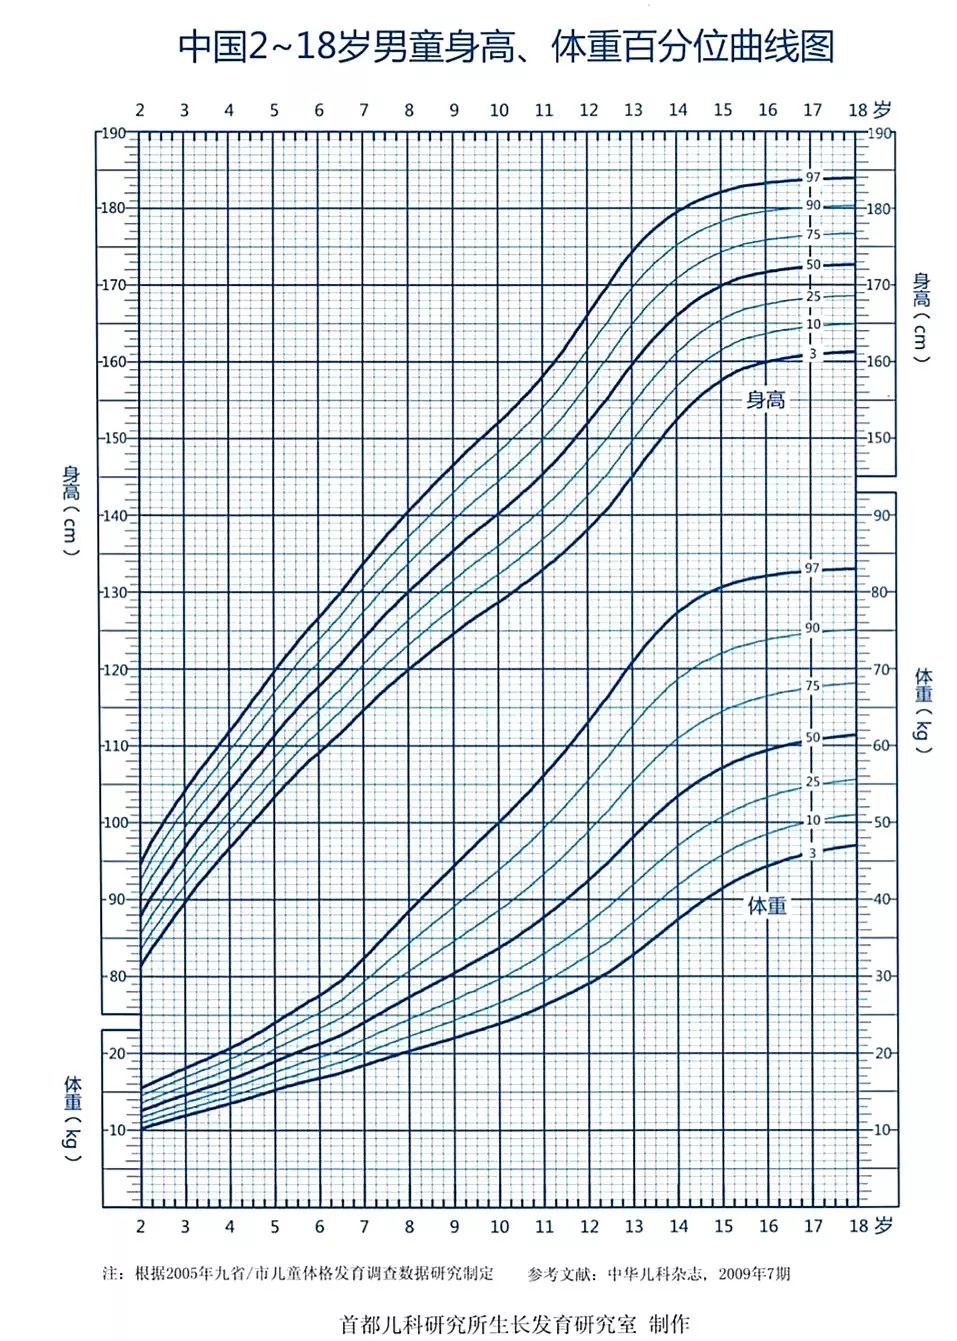 《中国7岁以下儿童生长发育参照标准》绘制的生长曲线,就像下图 95